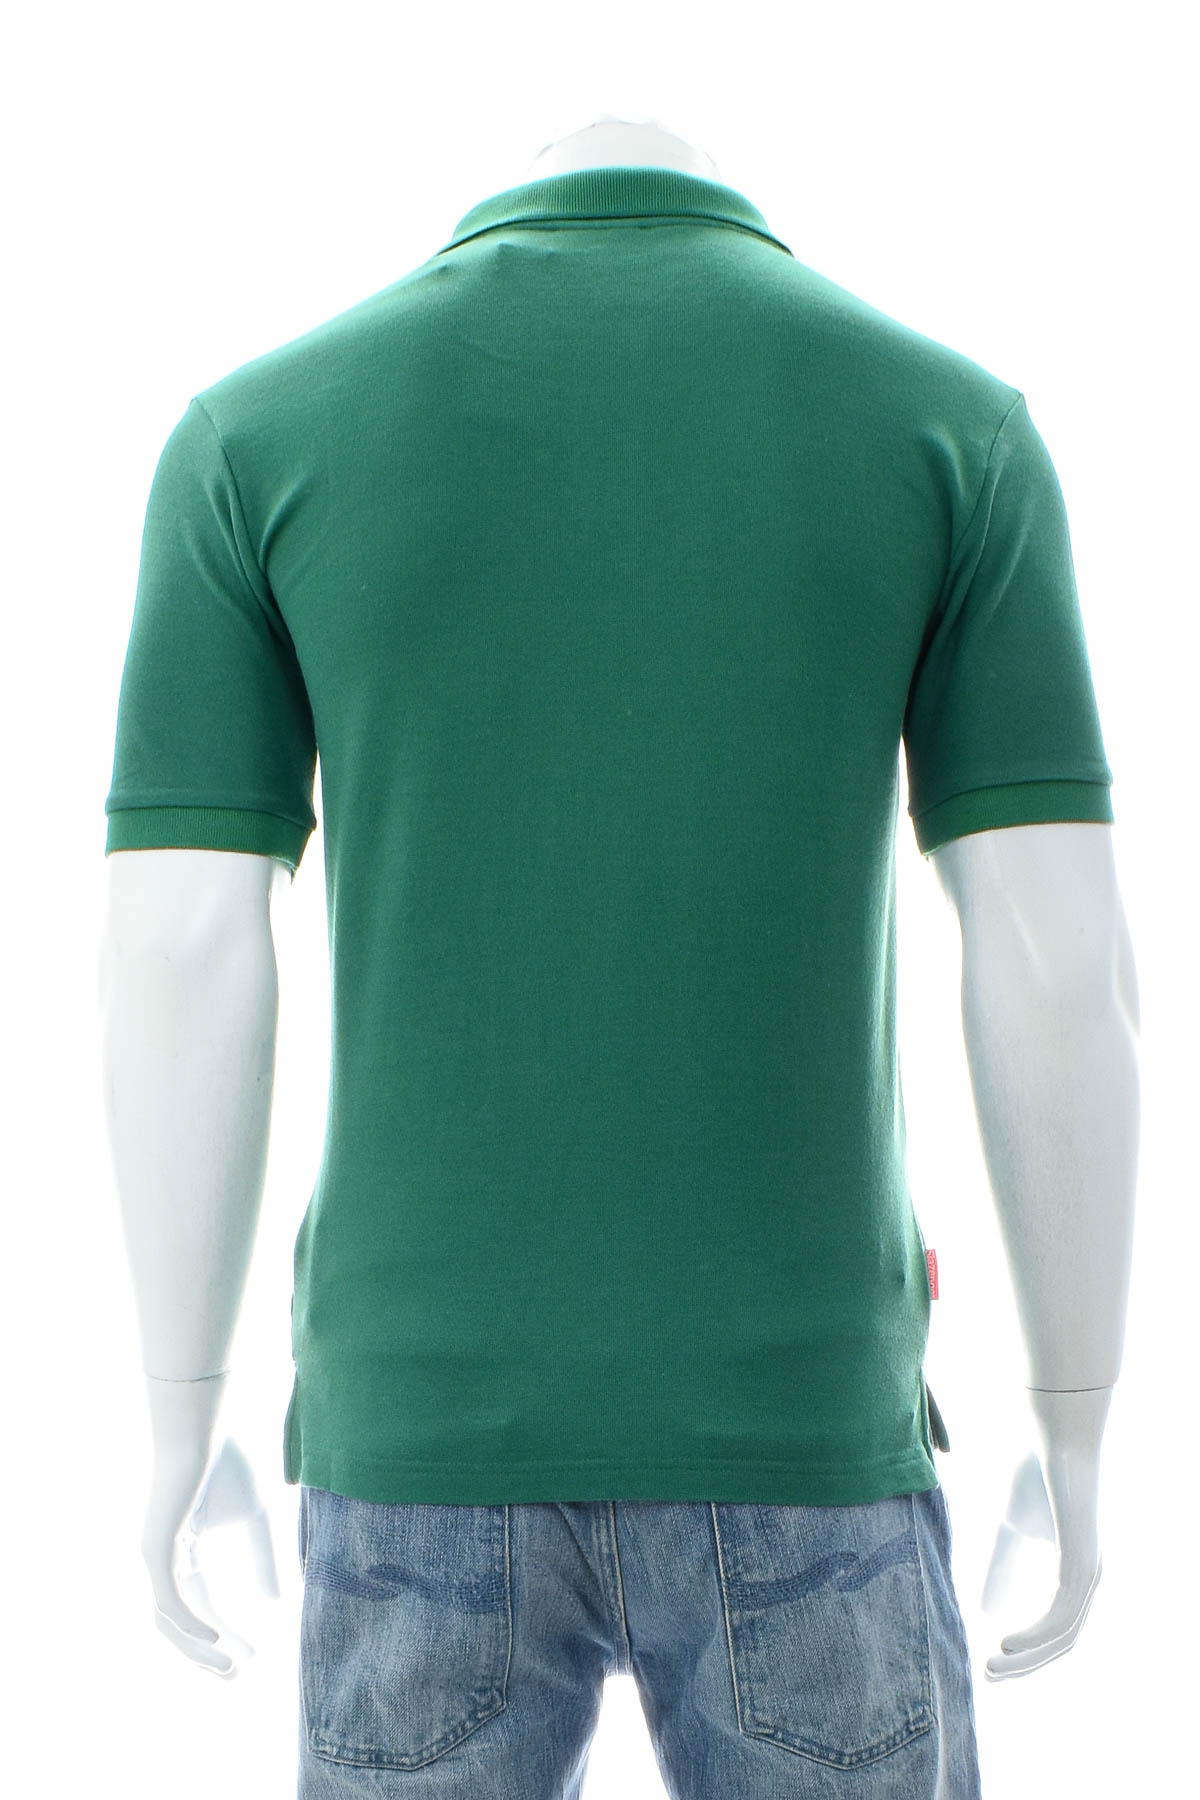 Men's T-shirt - Slazenger - 1